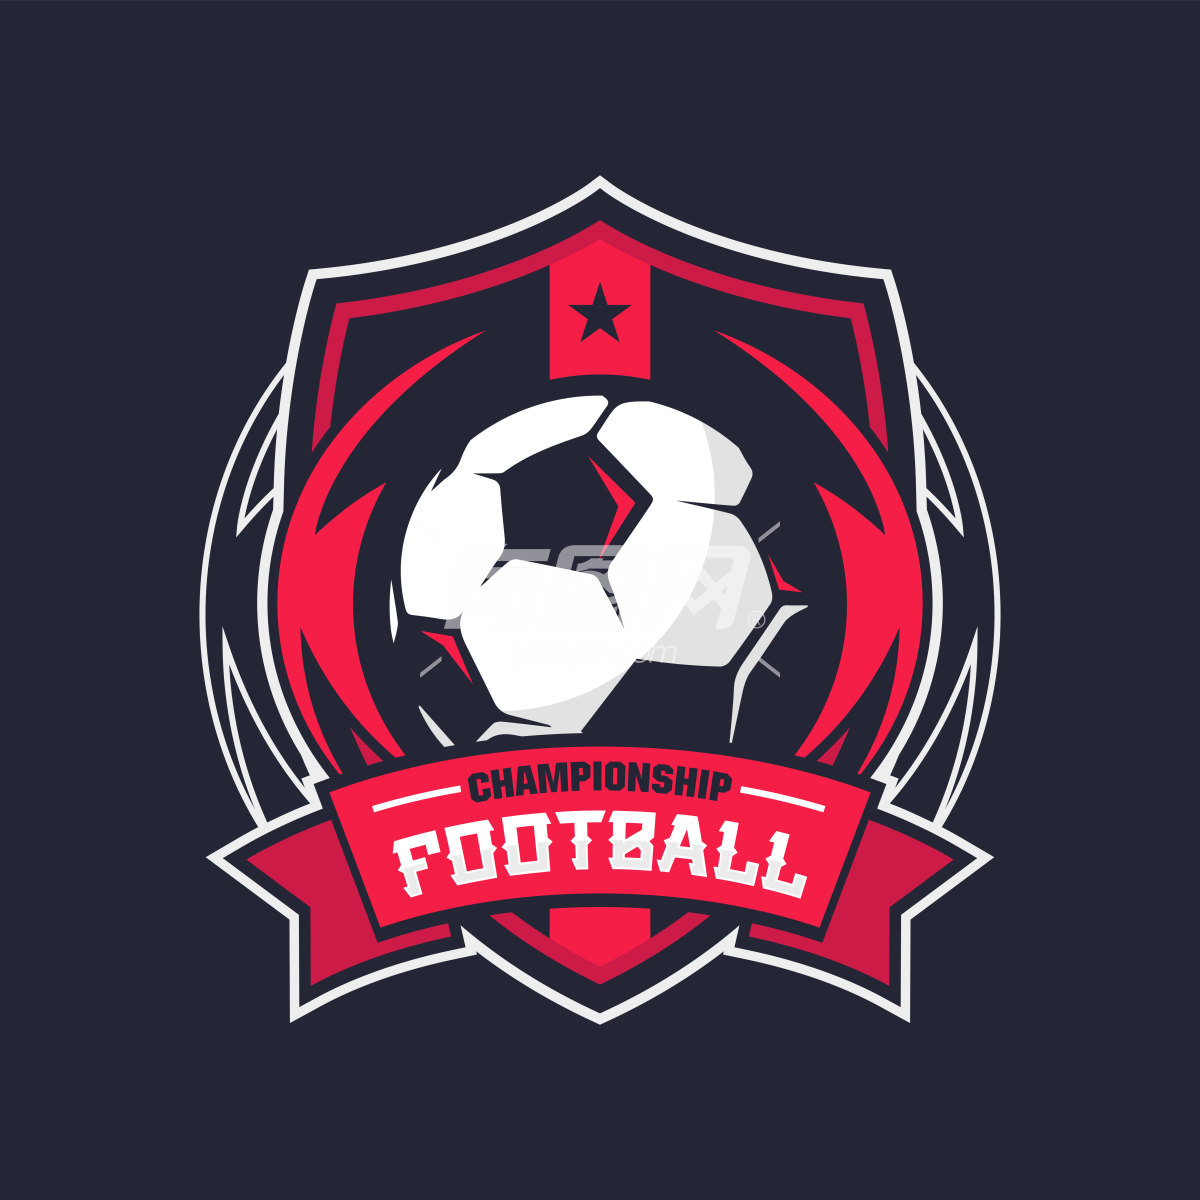 足球比赛的徽章